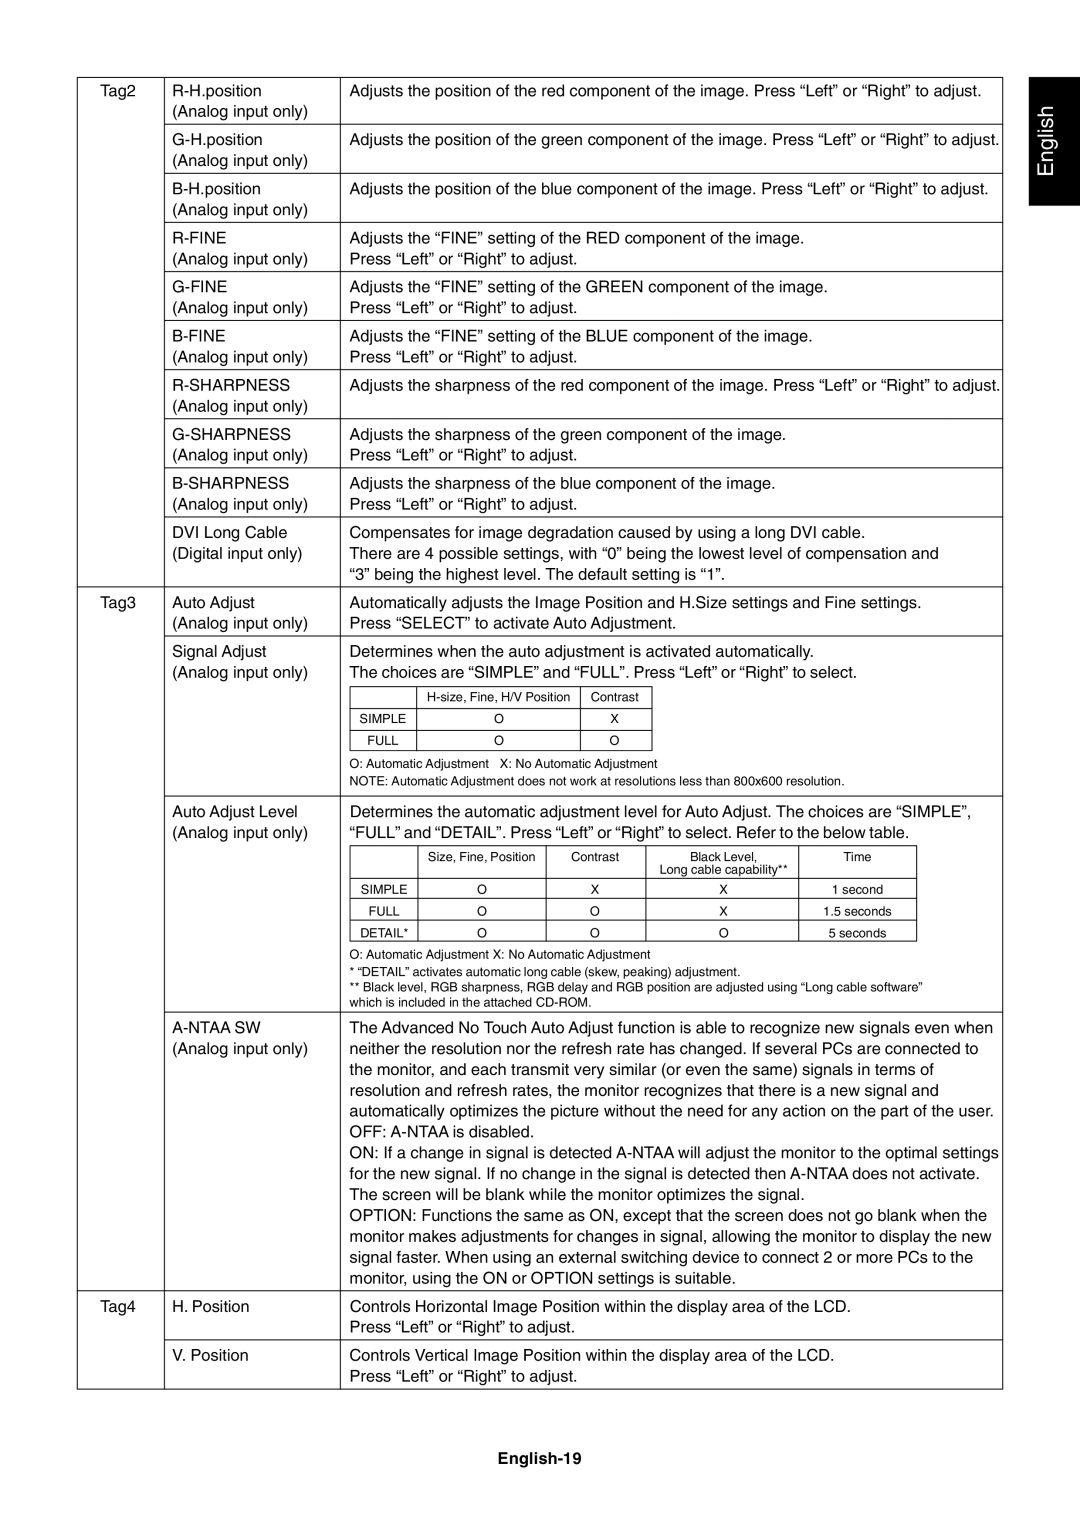 NEC LCD2690WUXi user manual English-19 